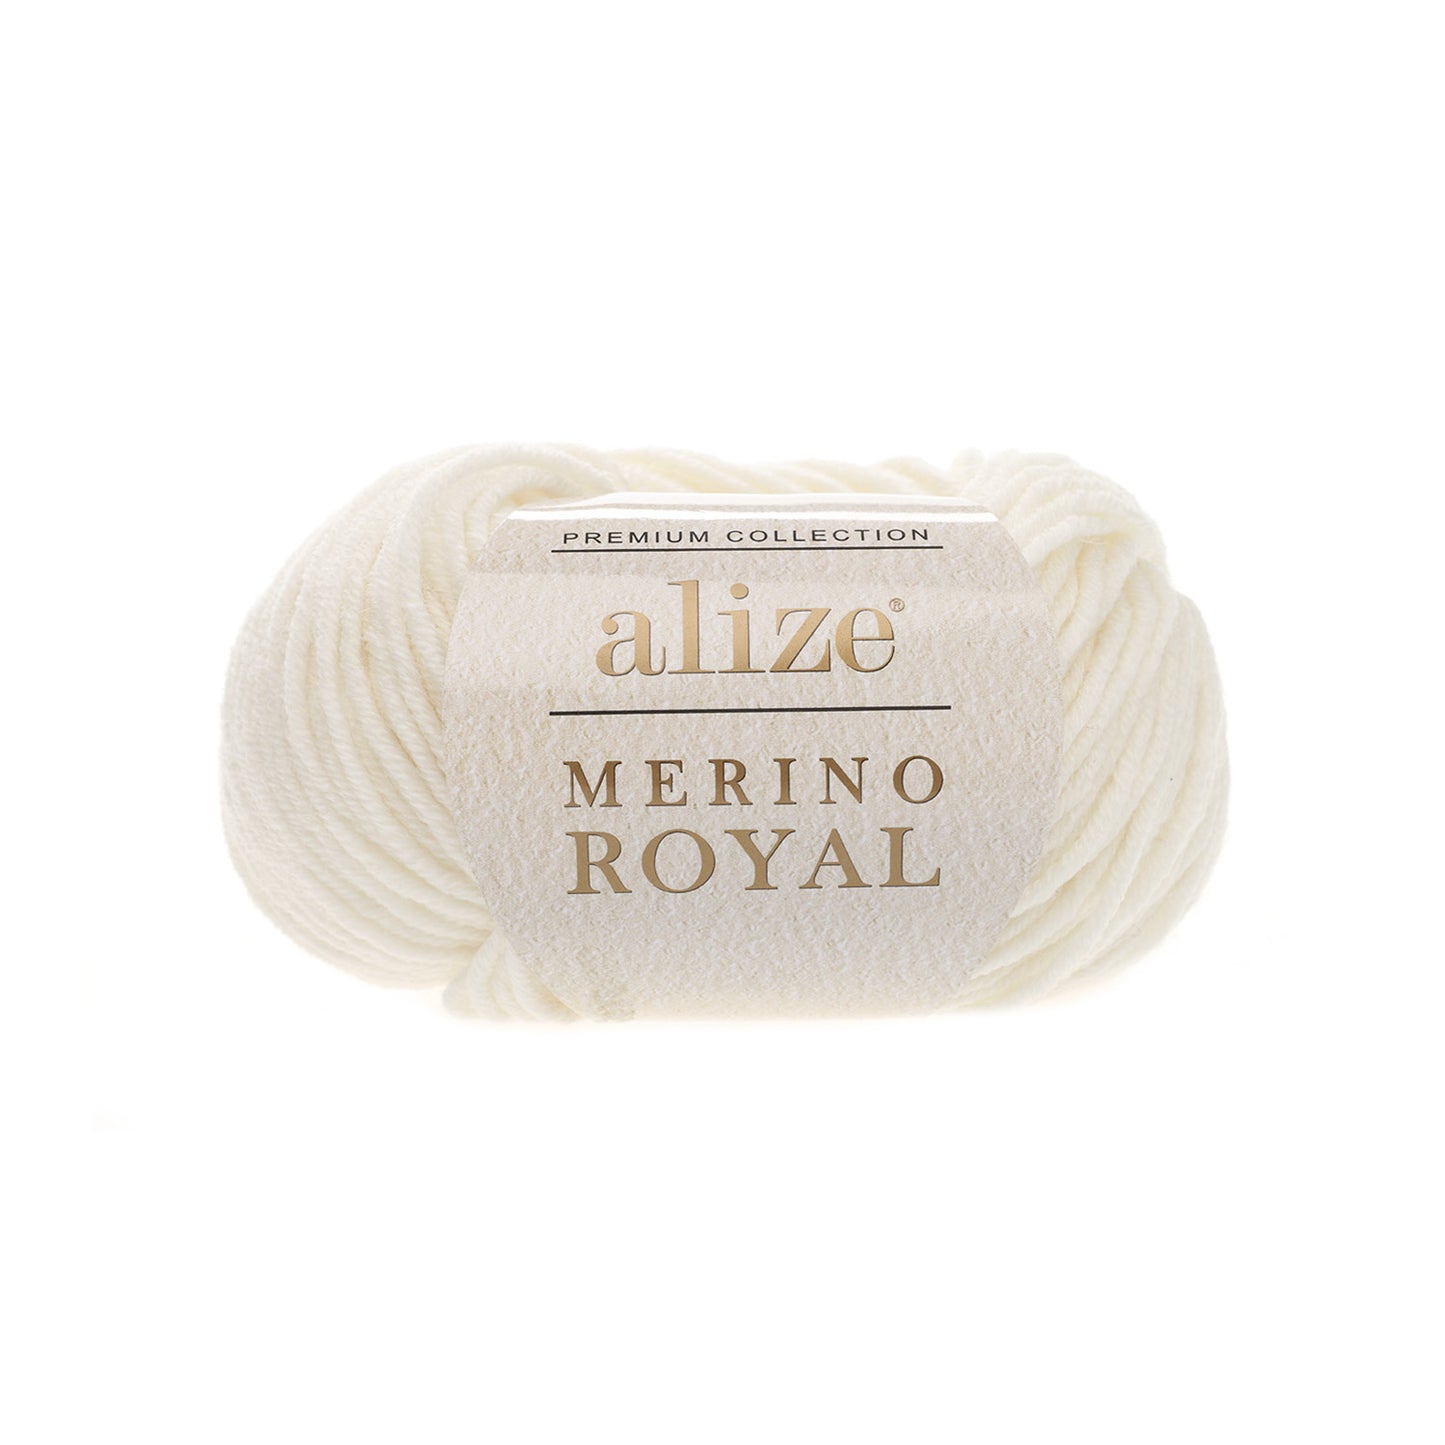 Merino Royal yarn